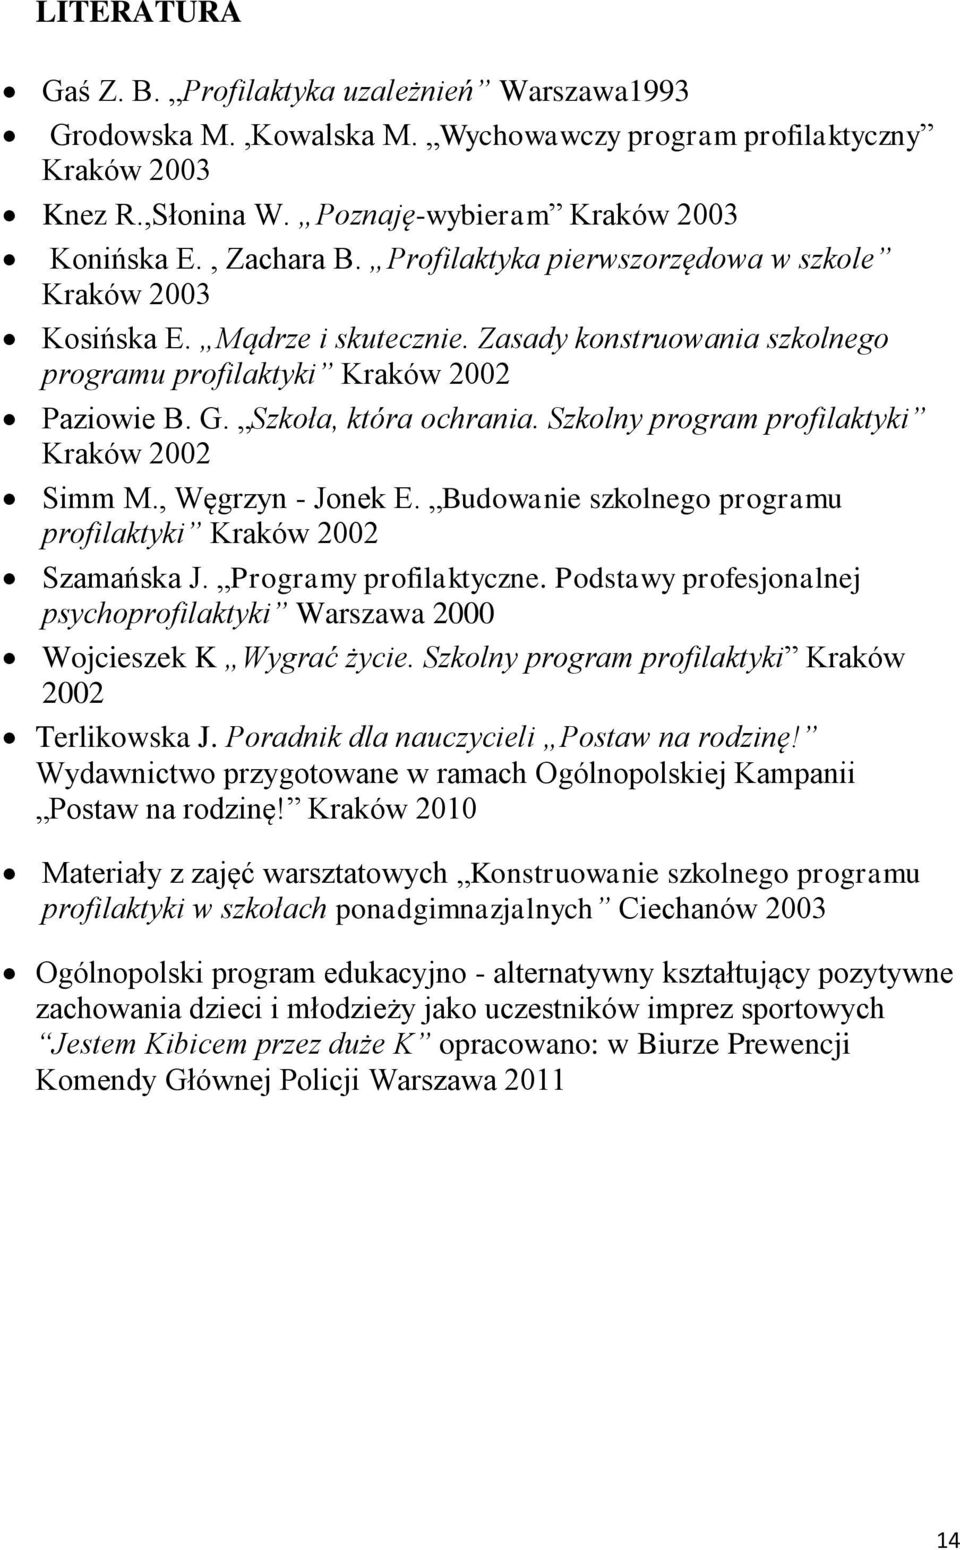 Szkolny program profilaktyki Kraków 2002 Simm M., Węgrzyn - Jonek E. Budowanie szkolnego programu profilaktyki Kraków 2002 Szamańska J. Programy profilaktyczne.